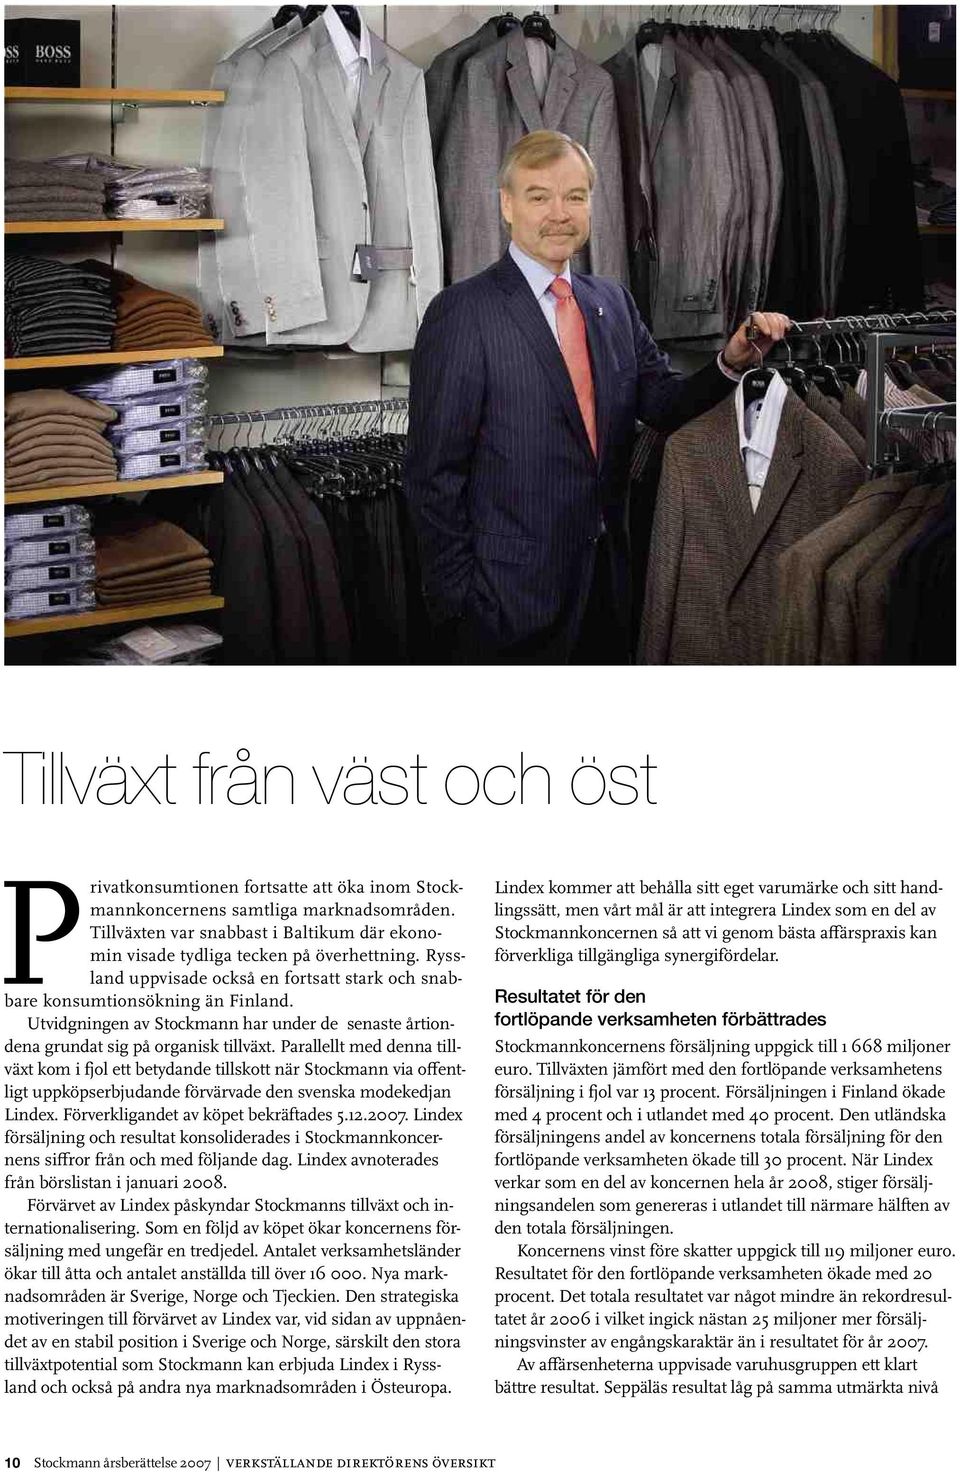 Parallellt med denna tillväxt kom i fjol ett betydande tillskott när Stockmann via offentligt uppköpserbjudande värvade den svenska modekedjan Lindex. Förverkligandet köpet bekräftades 5.12.2007.